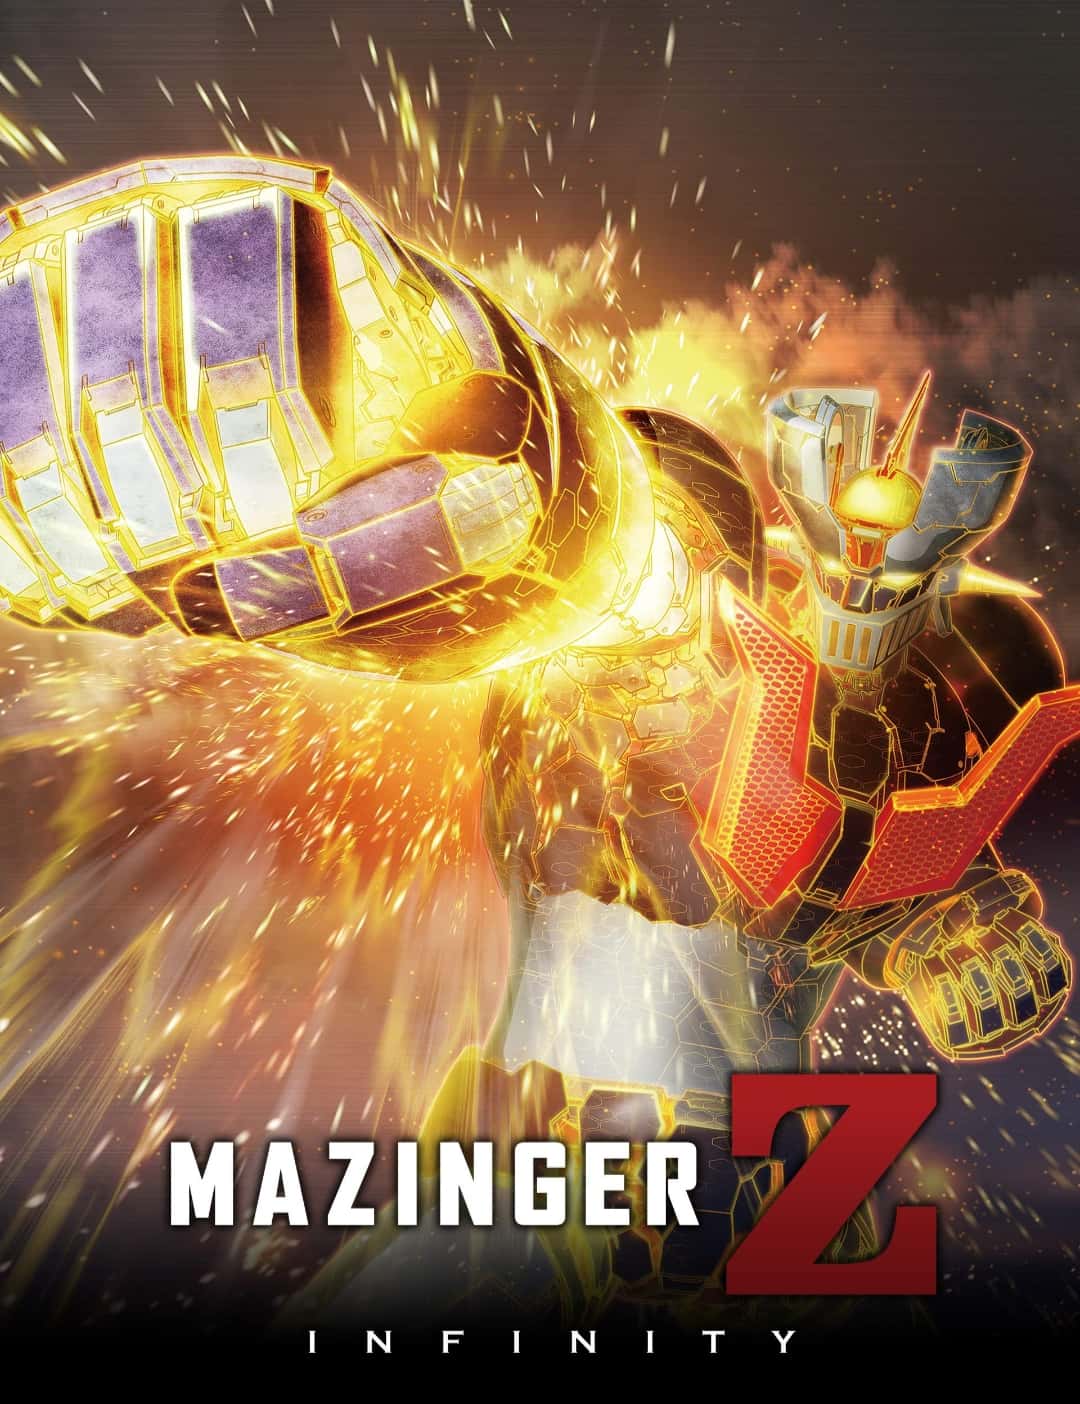 Mazinger Z Infinity (2017) มาชินก้า Z อินฟินิตี้ สงครามหุ่นเหล็กพิฆาต